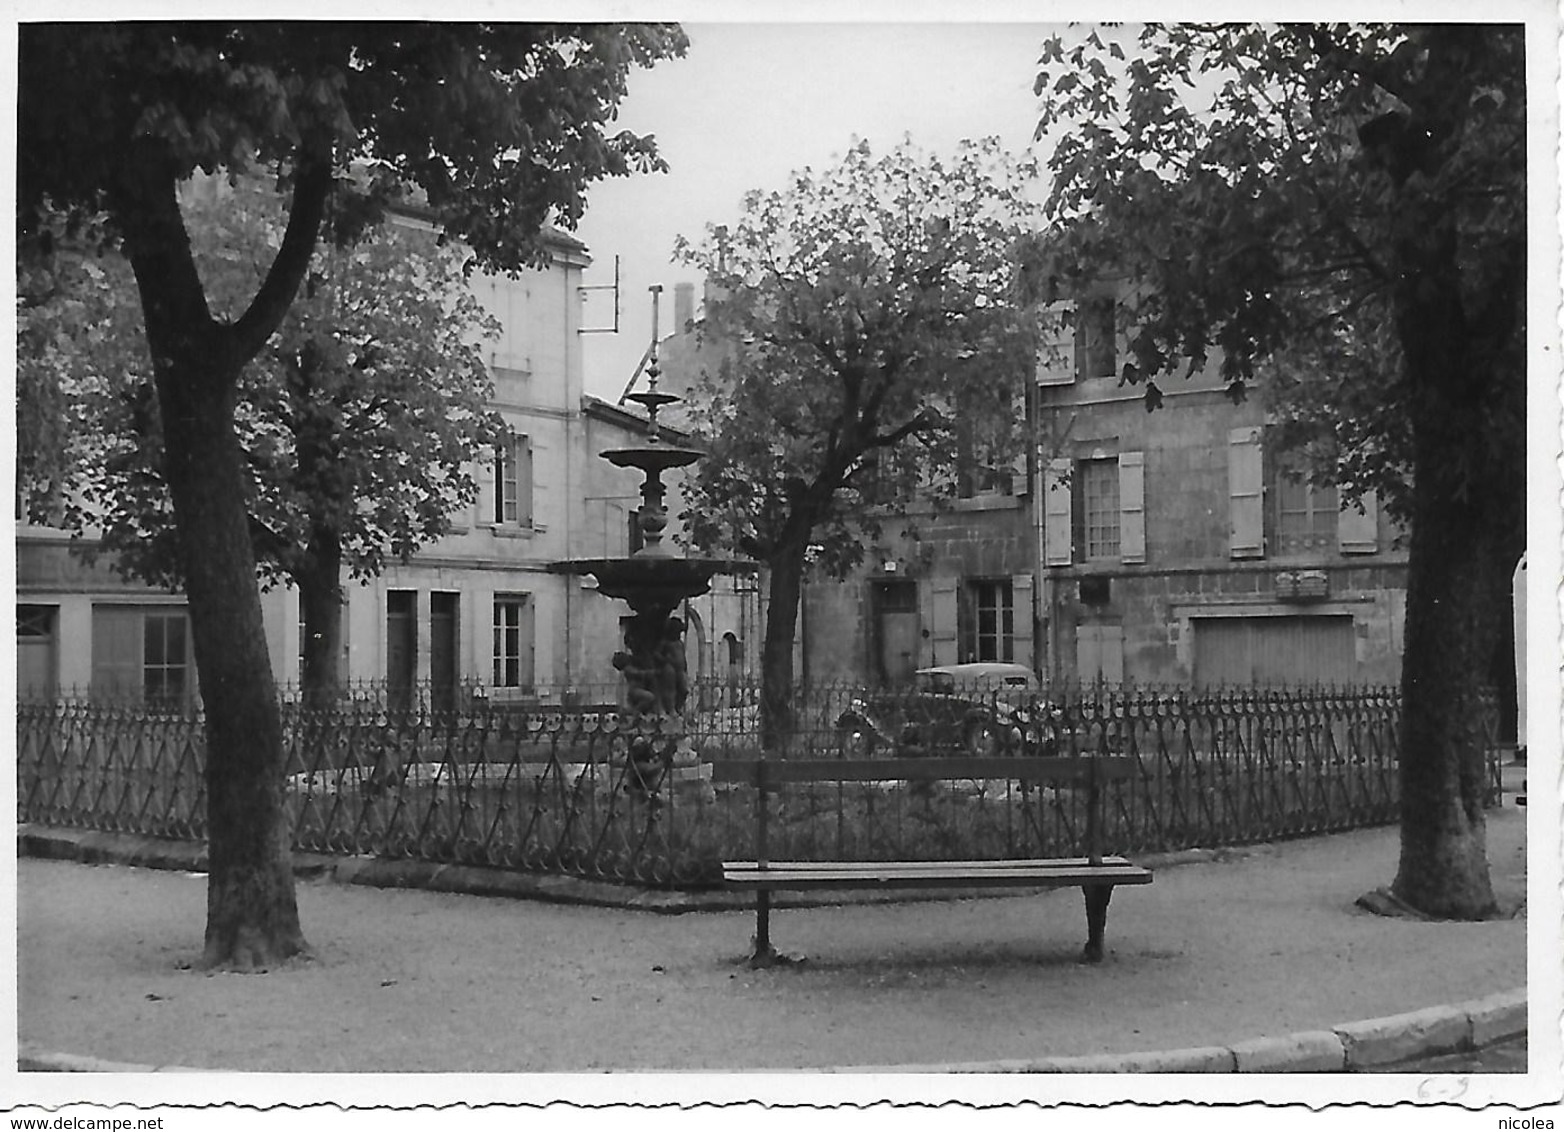 ANGOULEME - PLACE DU MINAGE GRANDE PHOTO ORIGINALE 1938 - Angouleme